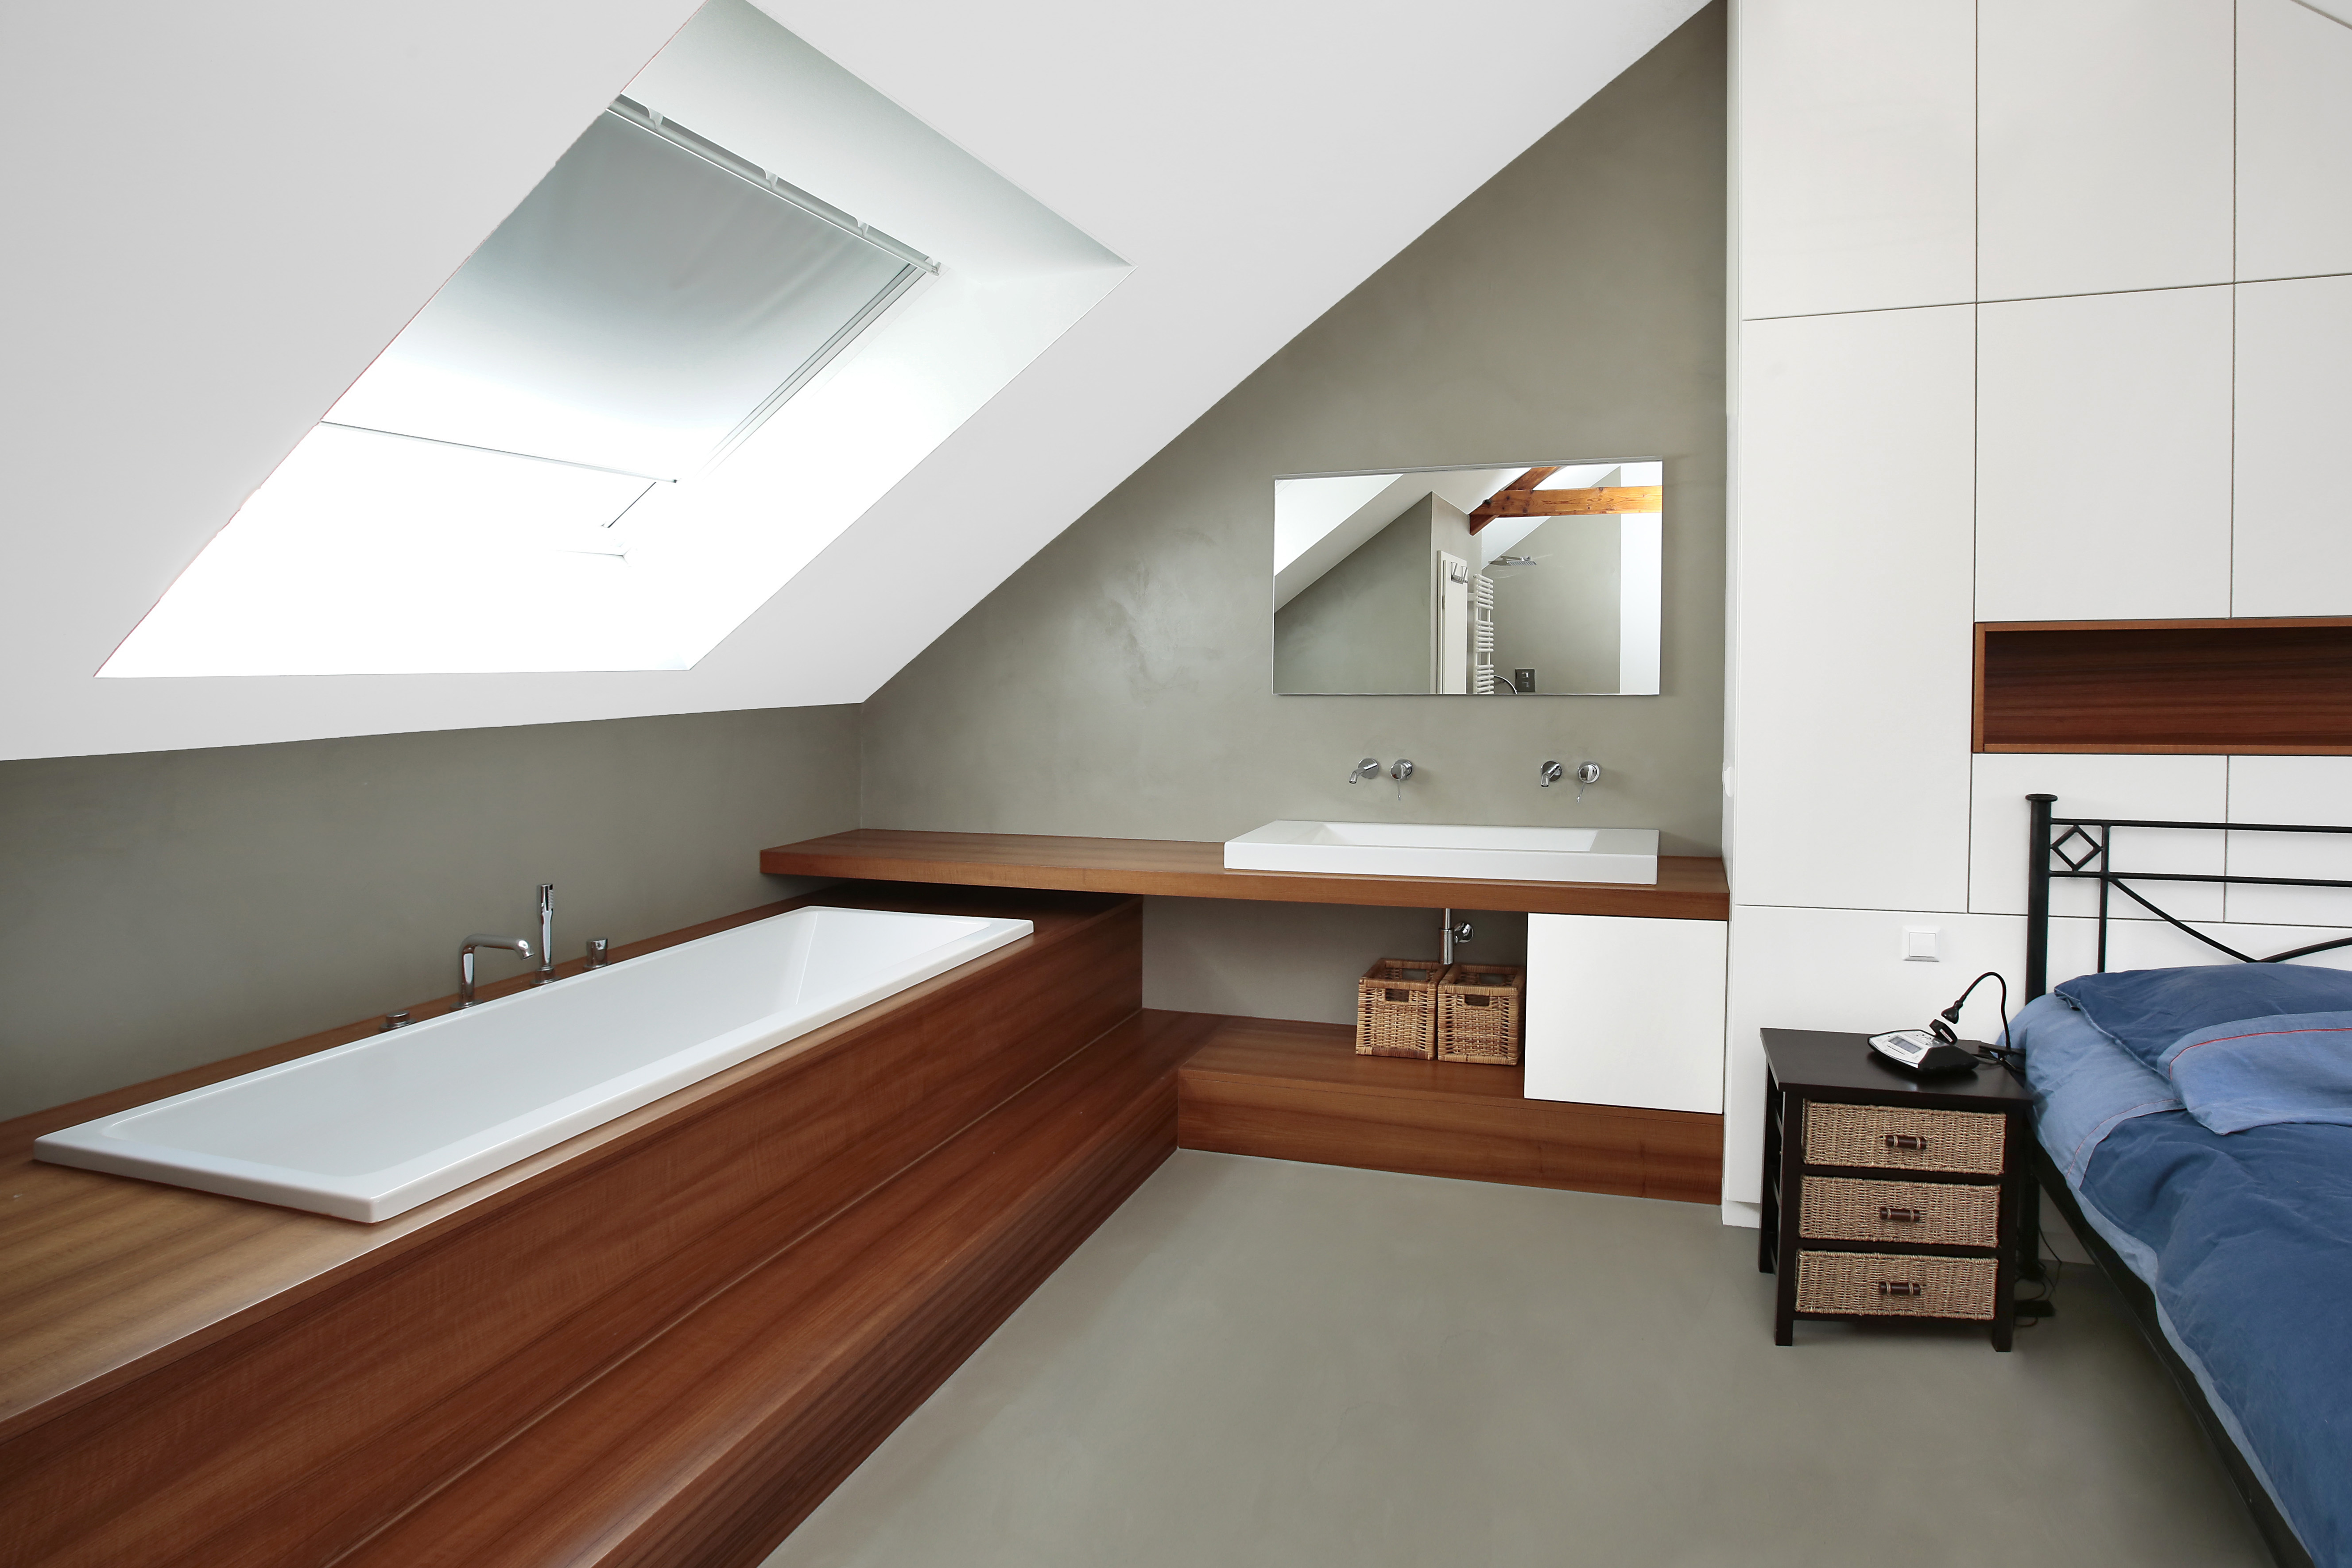 Mikrozementboden in einem Raum mit integrierter Badewanne